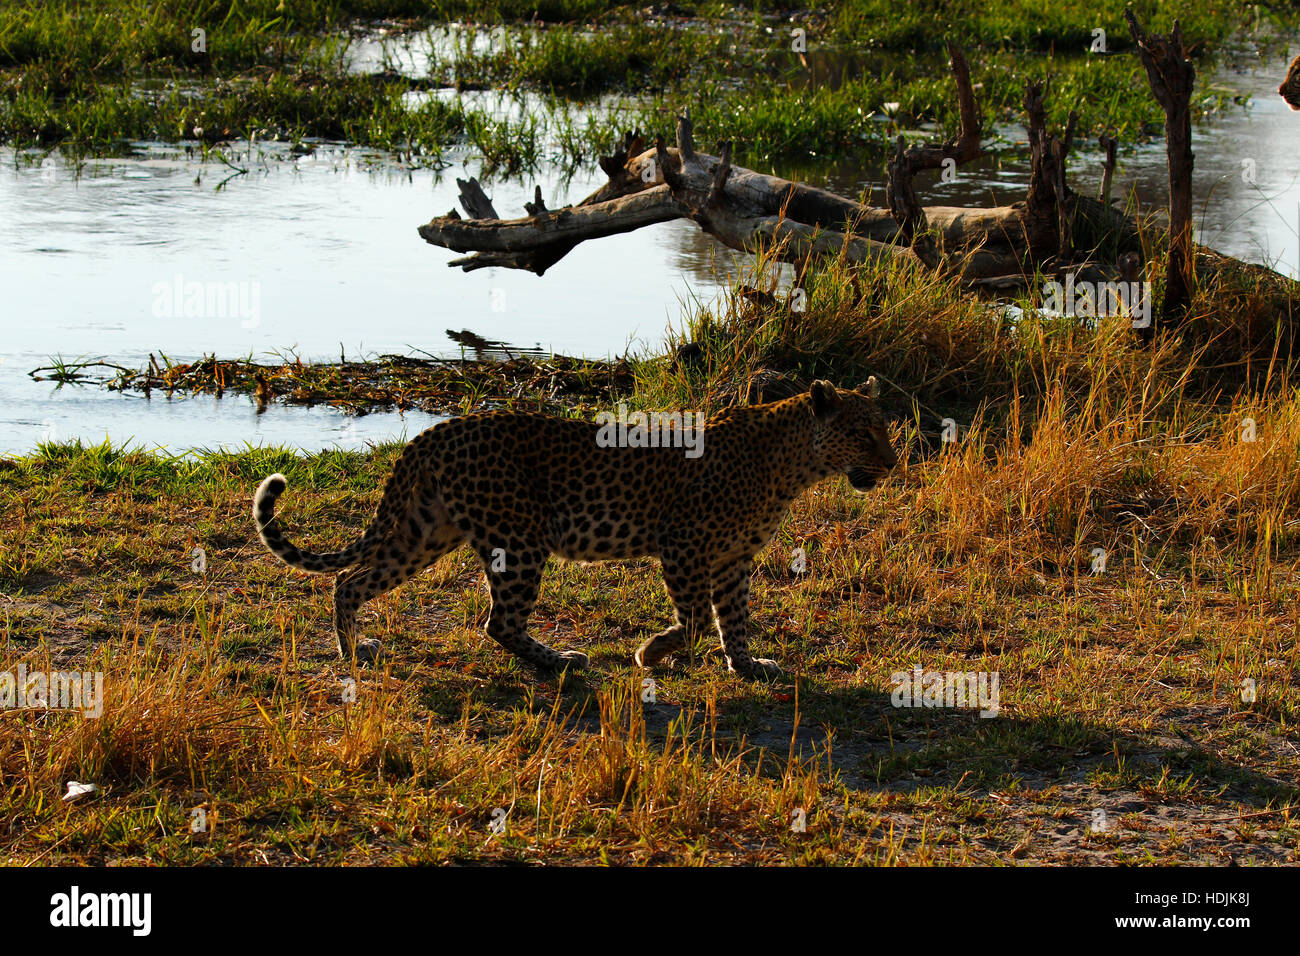 Schöne Leoparden in freier Wildbahn eine atemberaubende große Katze, da sie den afrikanischen Busch auf der Suche nach Beute herumlaufen Stockfoto